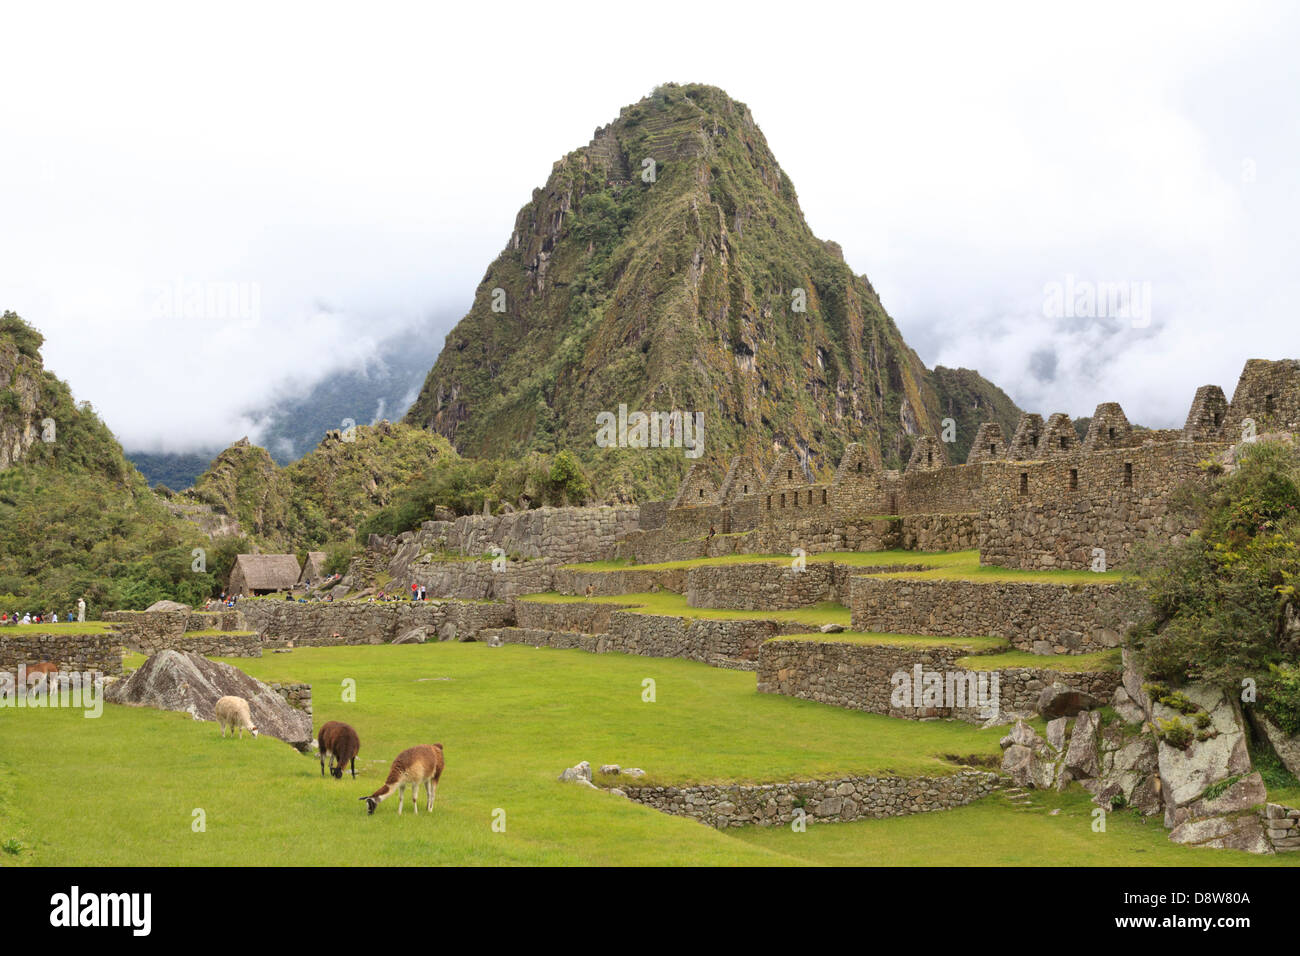 Llamas residente en el sitio arqueológico de Machu Picchu, Perú Foto de stock